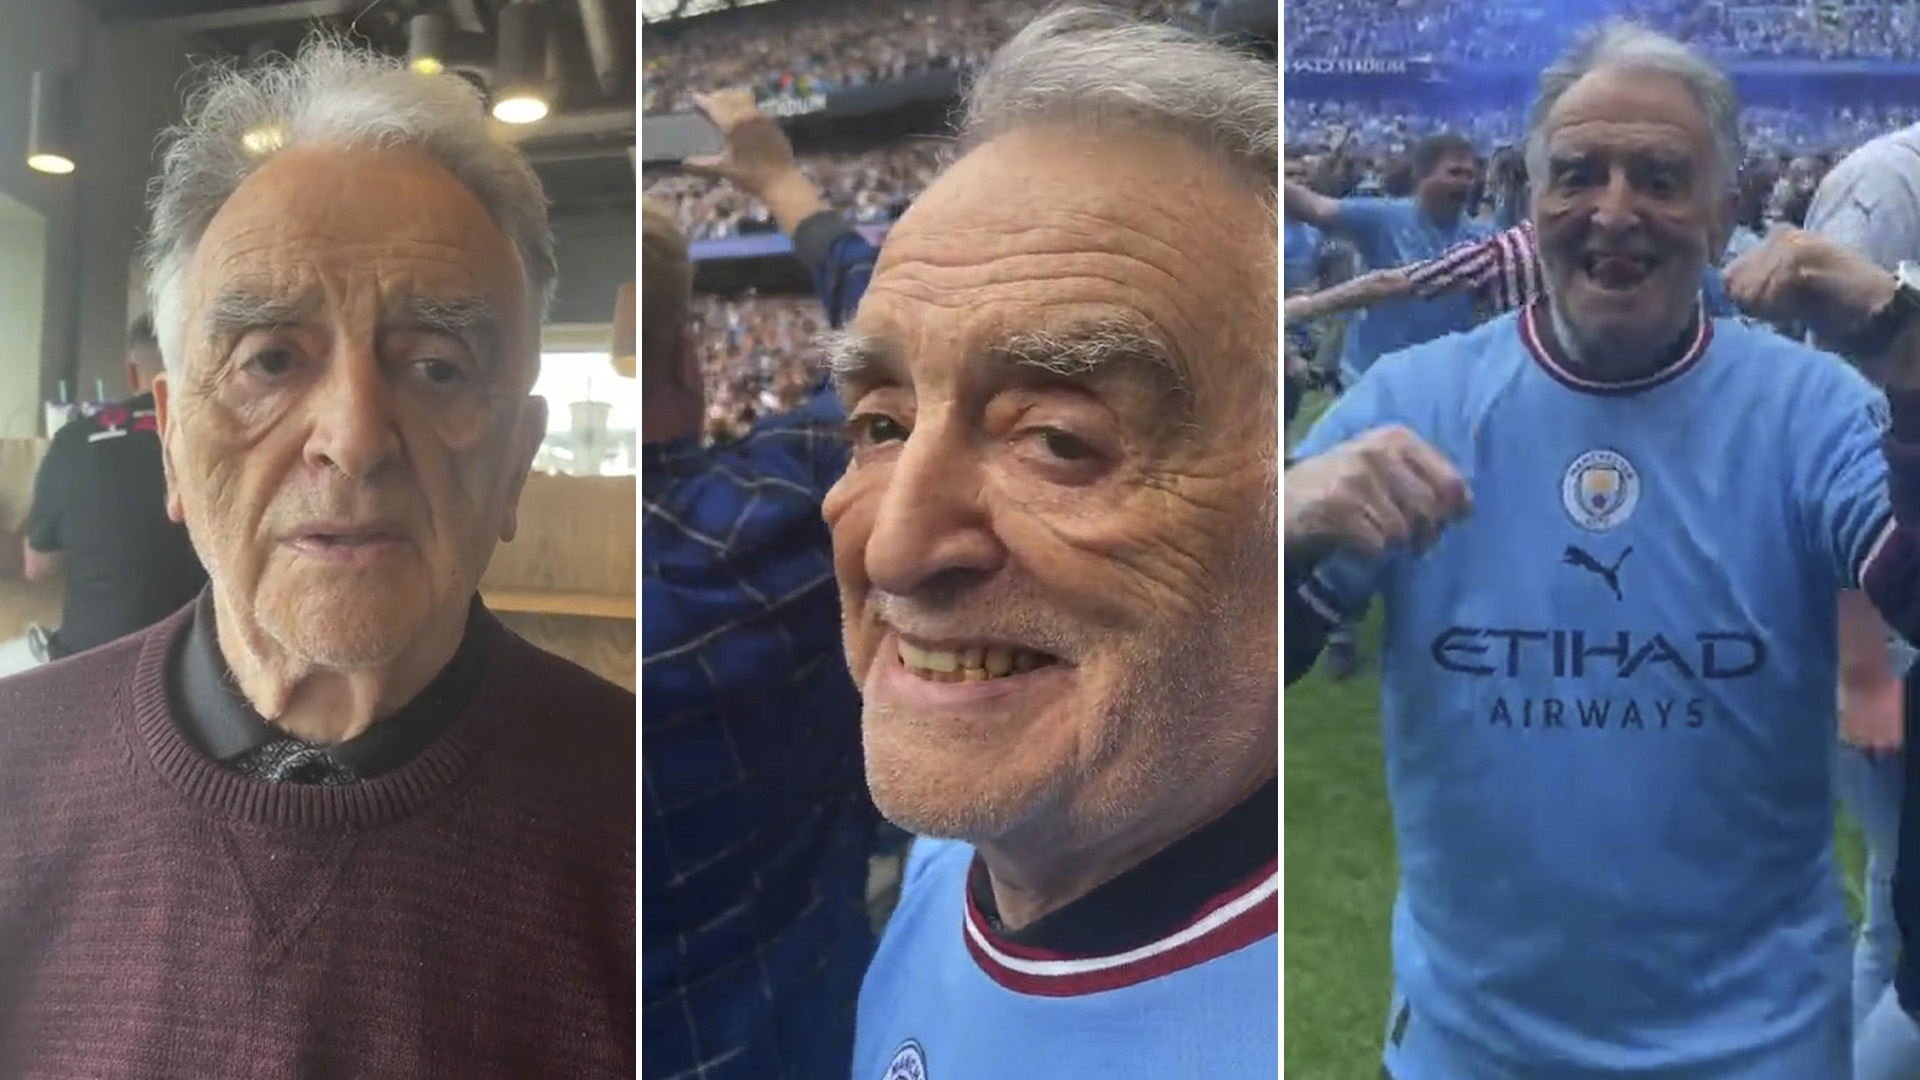 “Mi abuelo tiene demencia”: la tierna historia de un hincha del Manchester City que conmueve a Europa